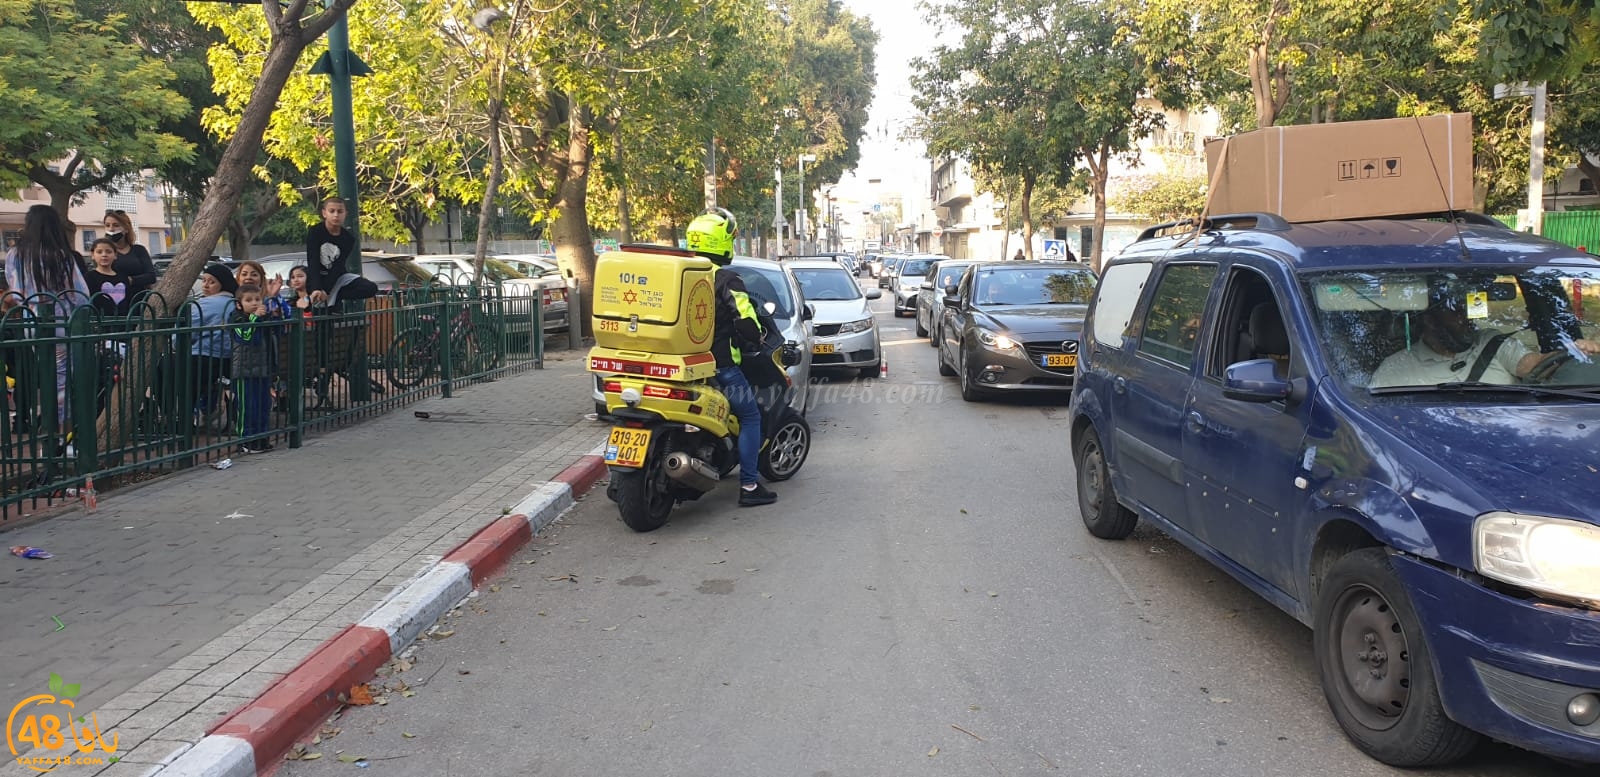 يافا: اصابة متوسطة لفتى اثر تعرضه لحادث دهس بالمدينة